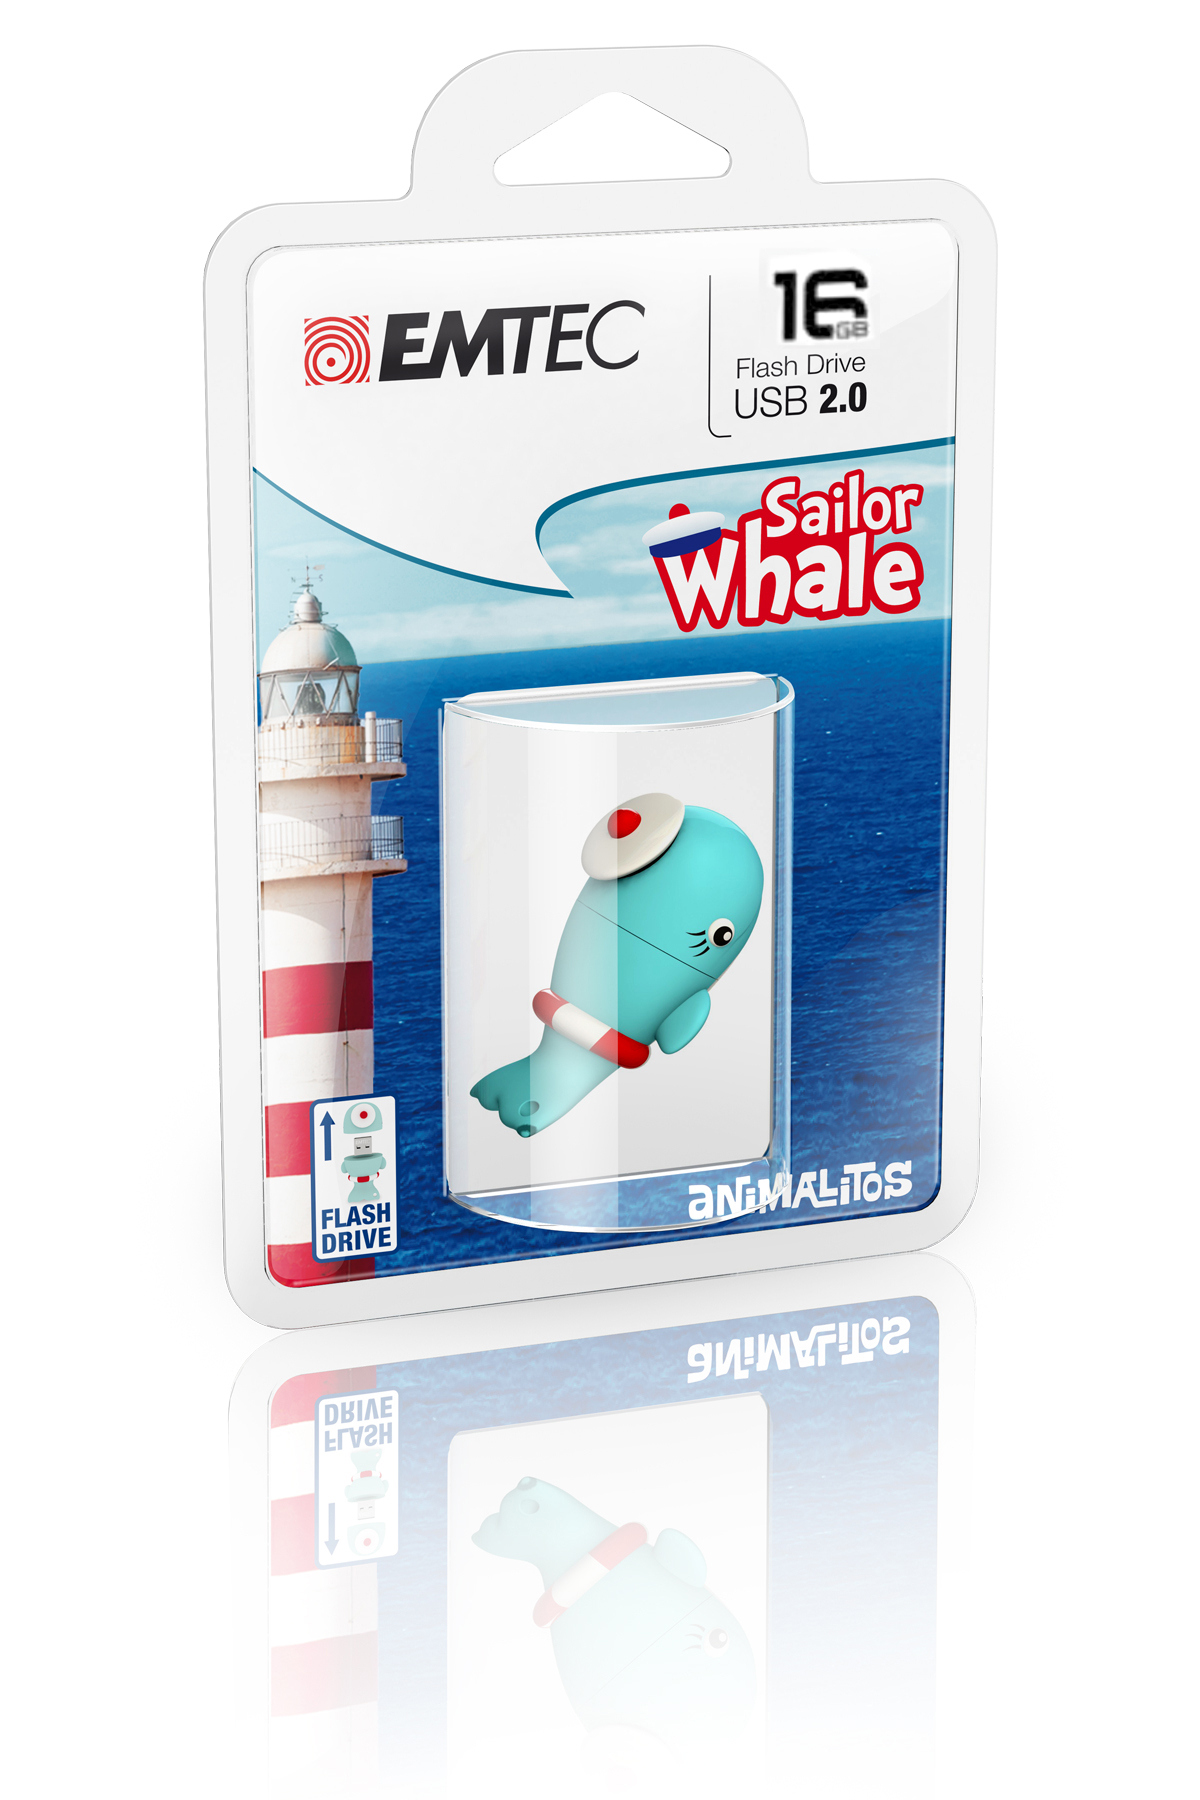 Emtec Sailor Whale